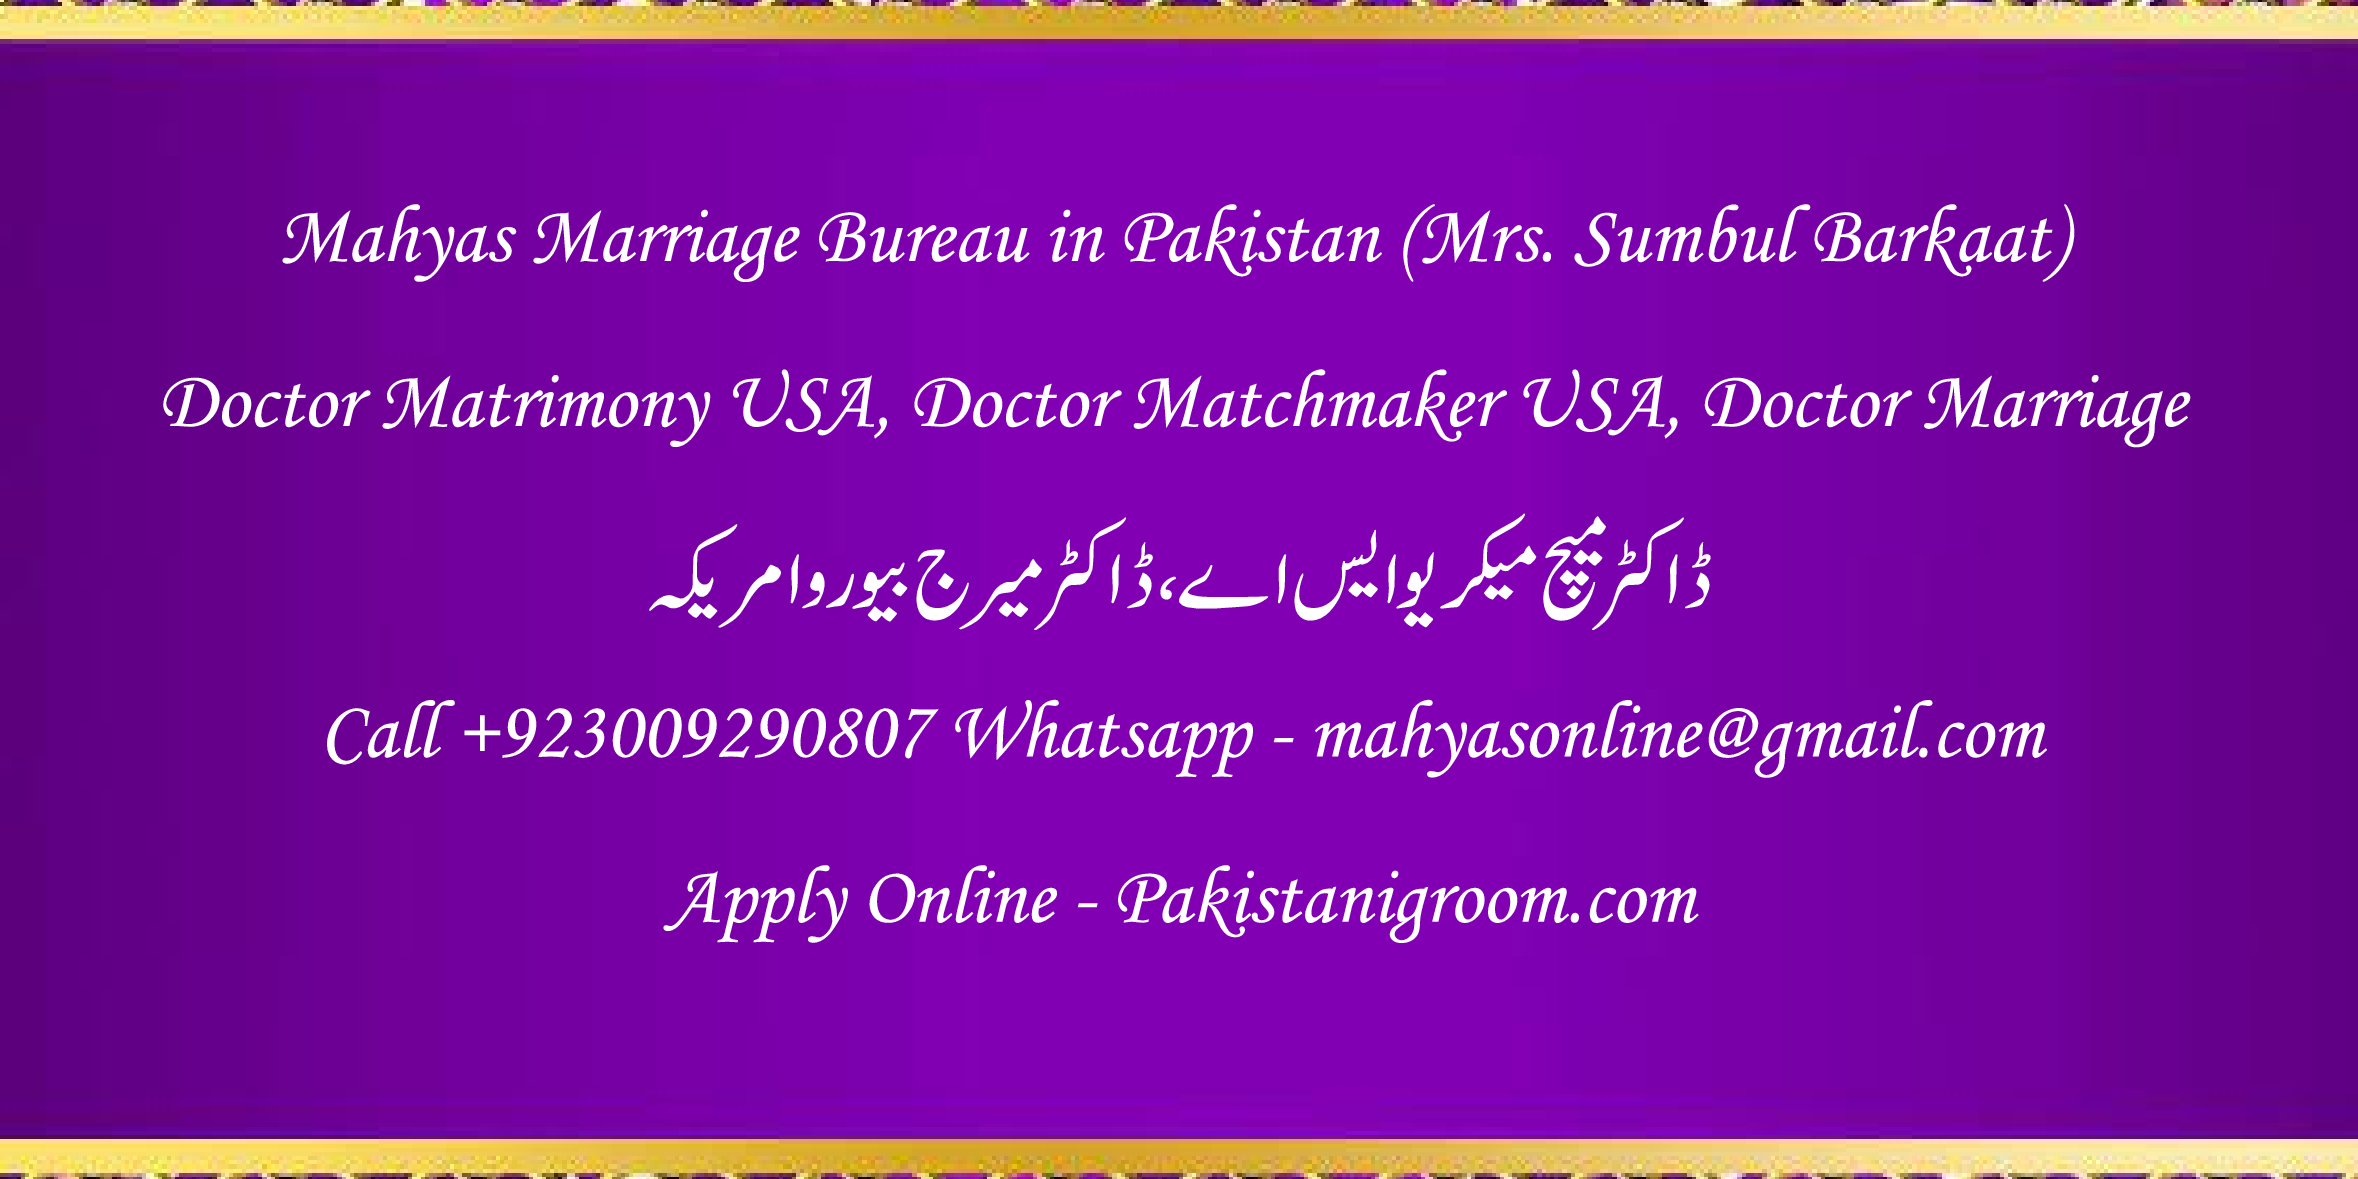 Mahyas-marriage-bureau-Karachi-Pakistan-for-Shia-Sunni-Remarriage-Divorce-Widow-Second-marriage-Punjabi-Pashto-Urdu-20.png